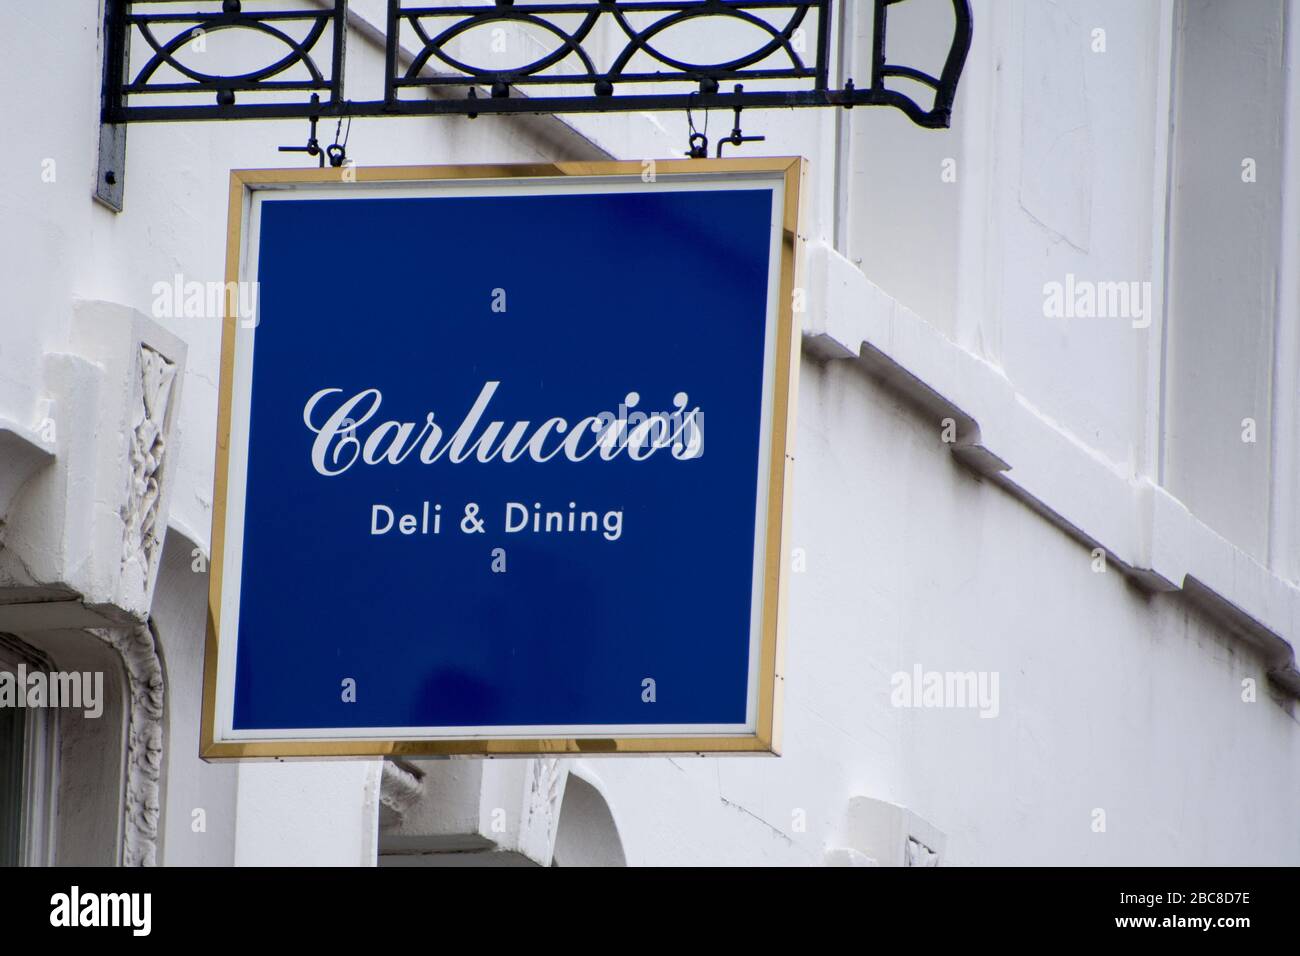 Carluccios italienische Lebensmittelrestaurants, die infolge der Coronavirus-Pandemie, April 2020 - London - UK, in die Verwaltung übernommen wurden Stockfoto